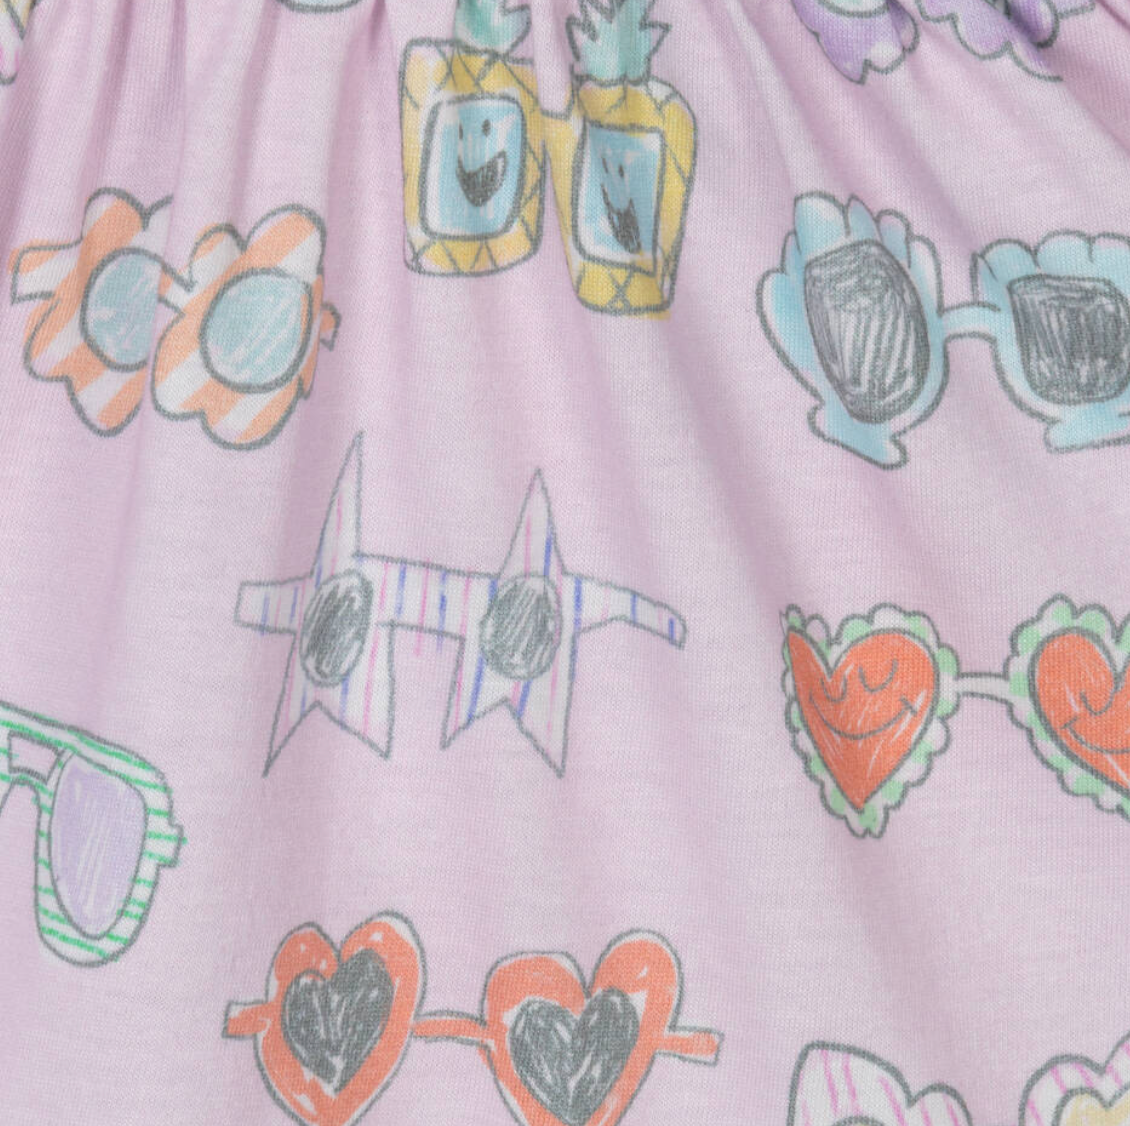 Stella McCartney Kids Pink Sleeveless Jersey Sunglasses Dress